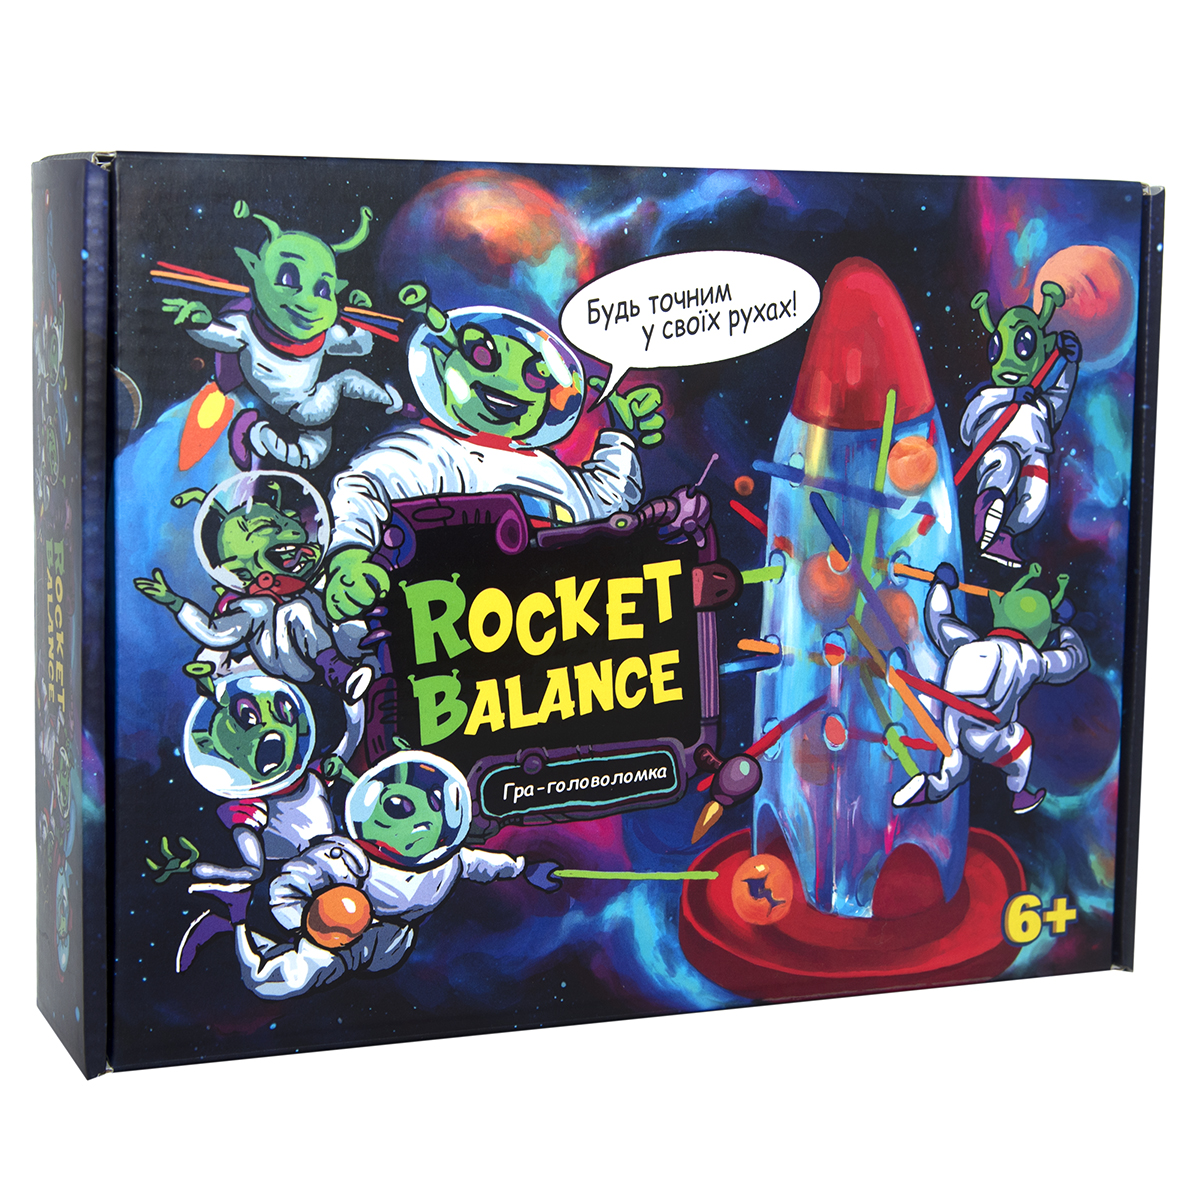 Board game Rocket Balance (30407)